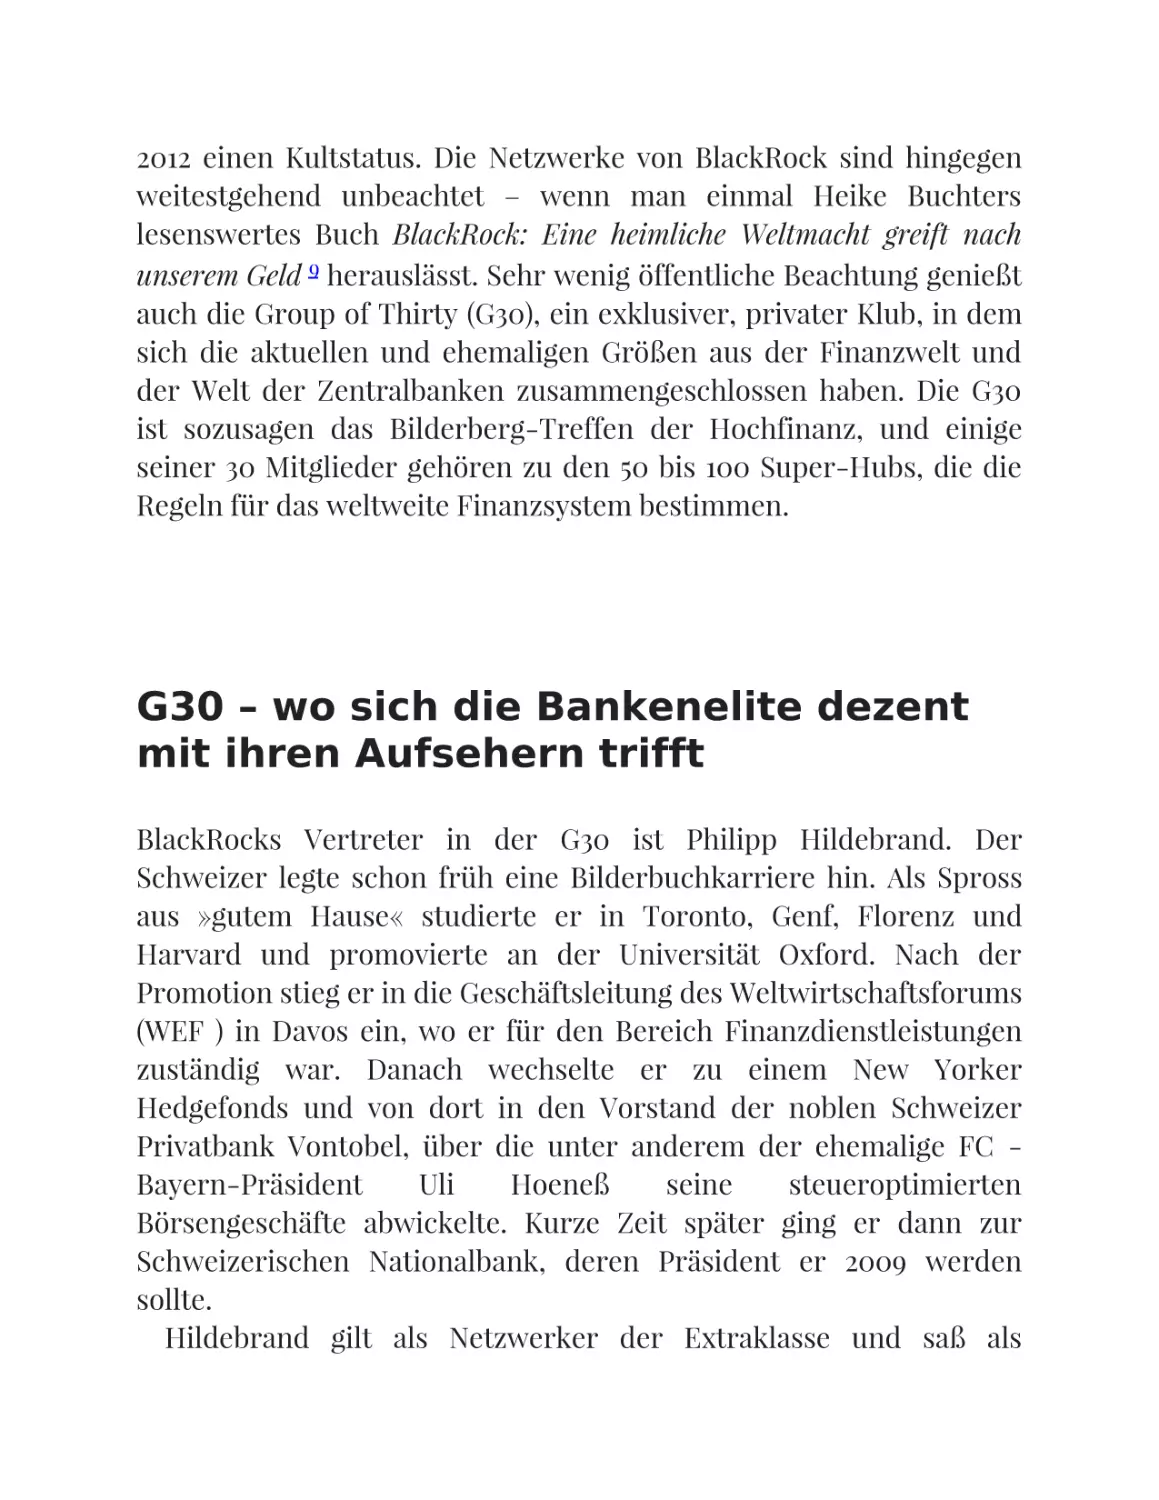 G30 – wo sich die Bankenelite dezent mit ihren Aufsehern trifft